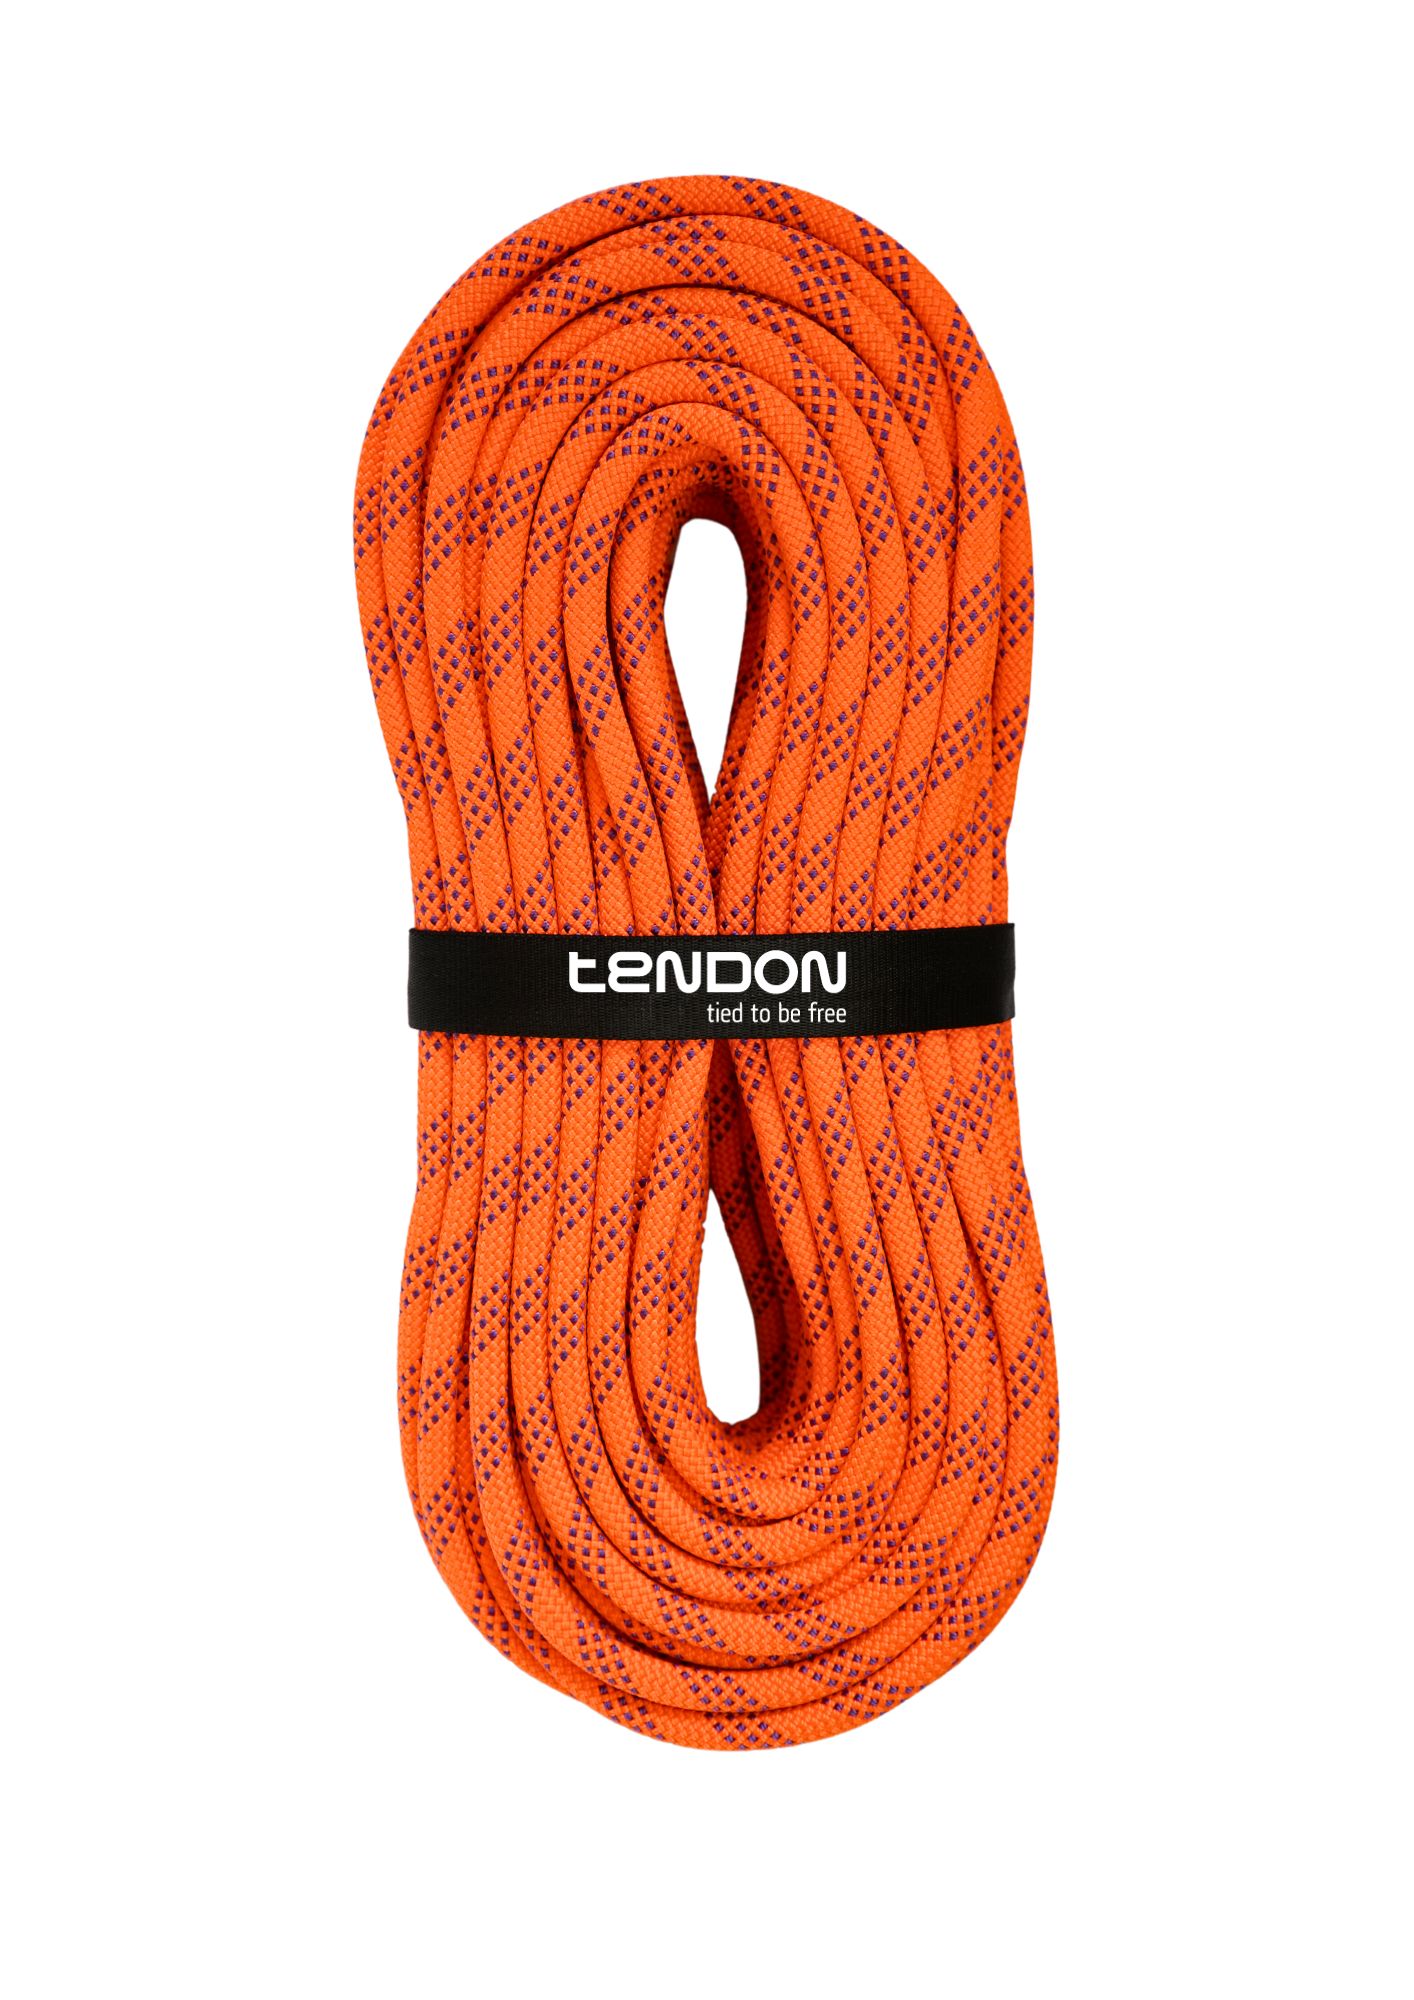 TENDON eStatic 11.0 - orange